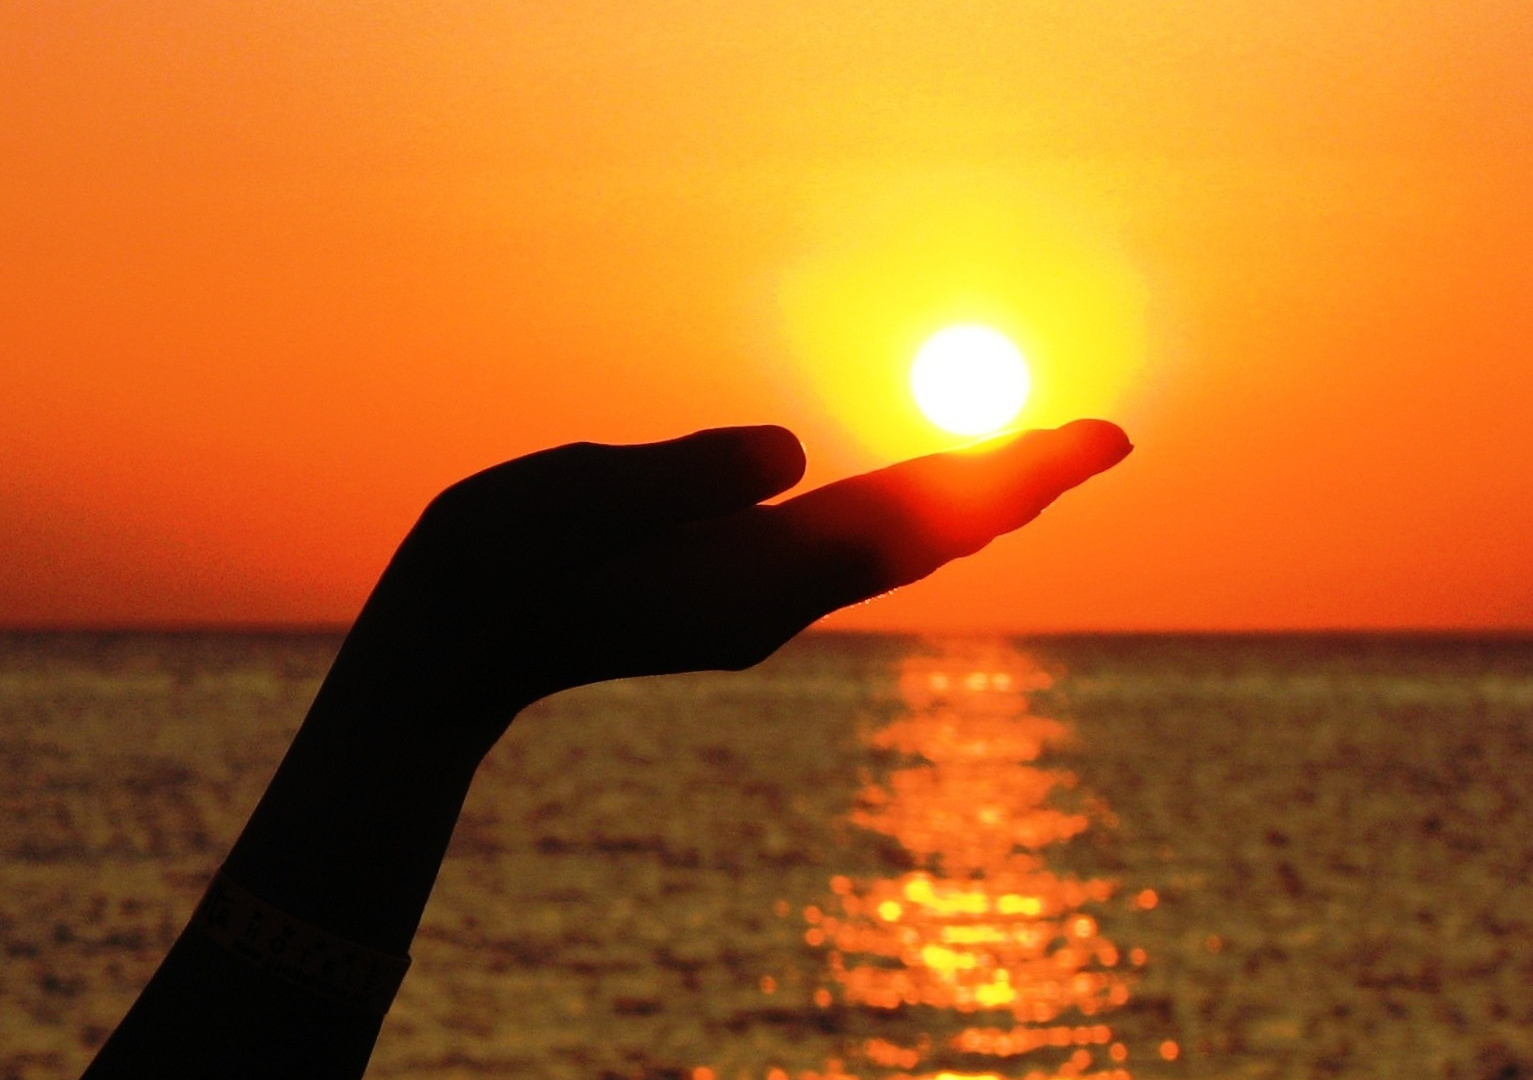 Ilta-aurinko ja meri taustalla, etualalla käsi pitelemässä aurinkoa.